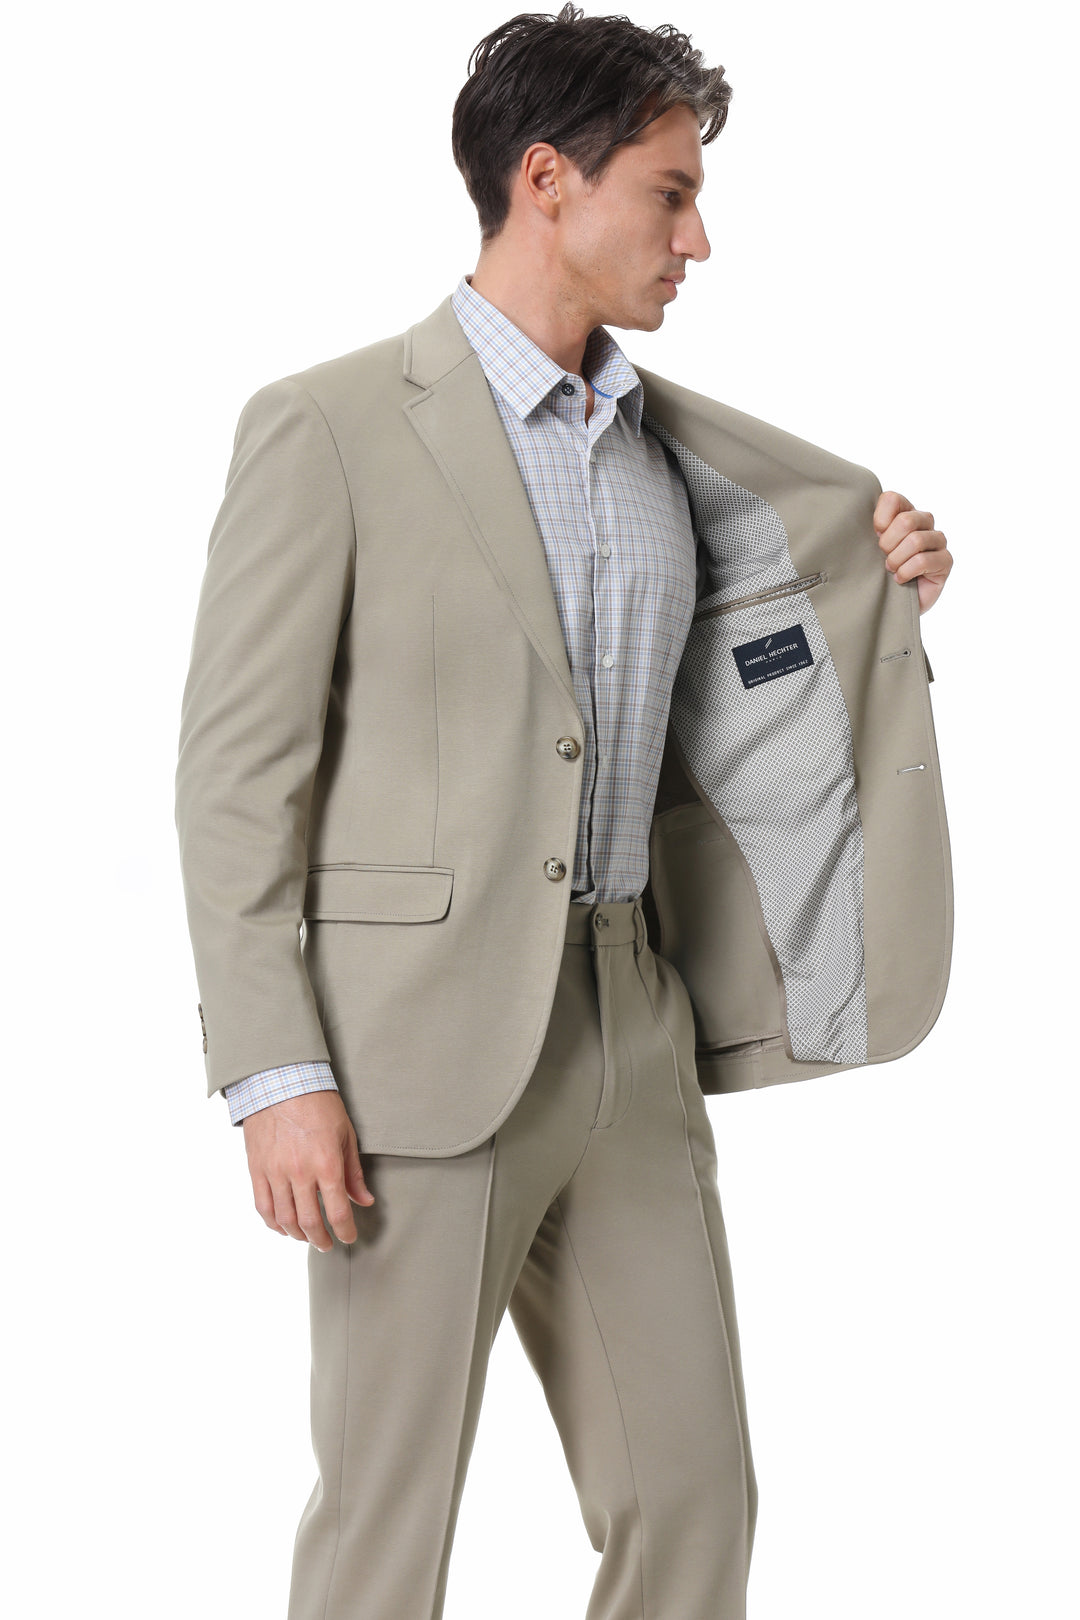 Hechter Paris X-Tech Stretch Suit Seperate Coat